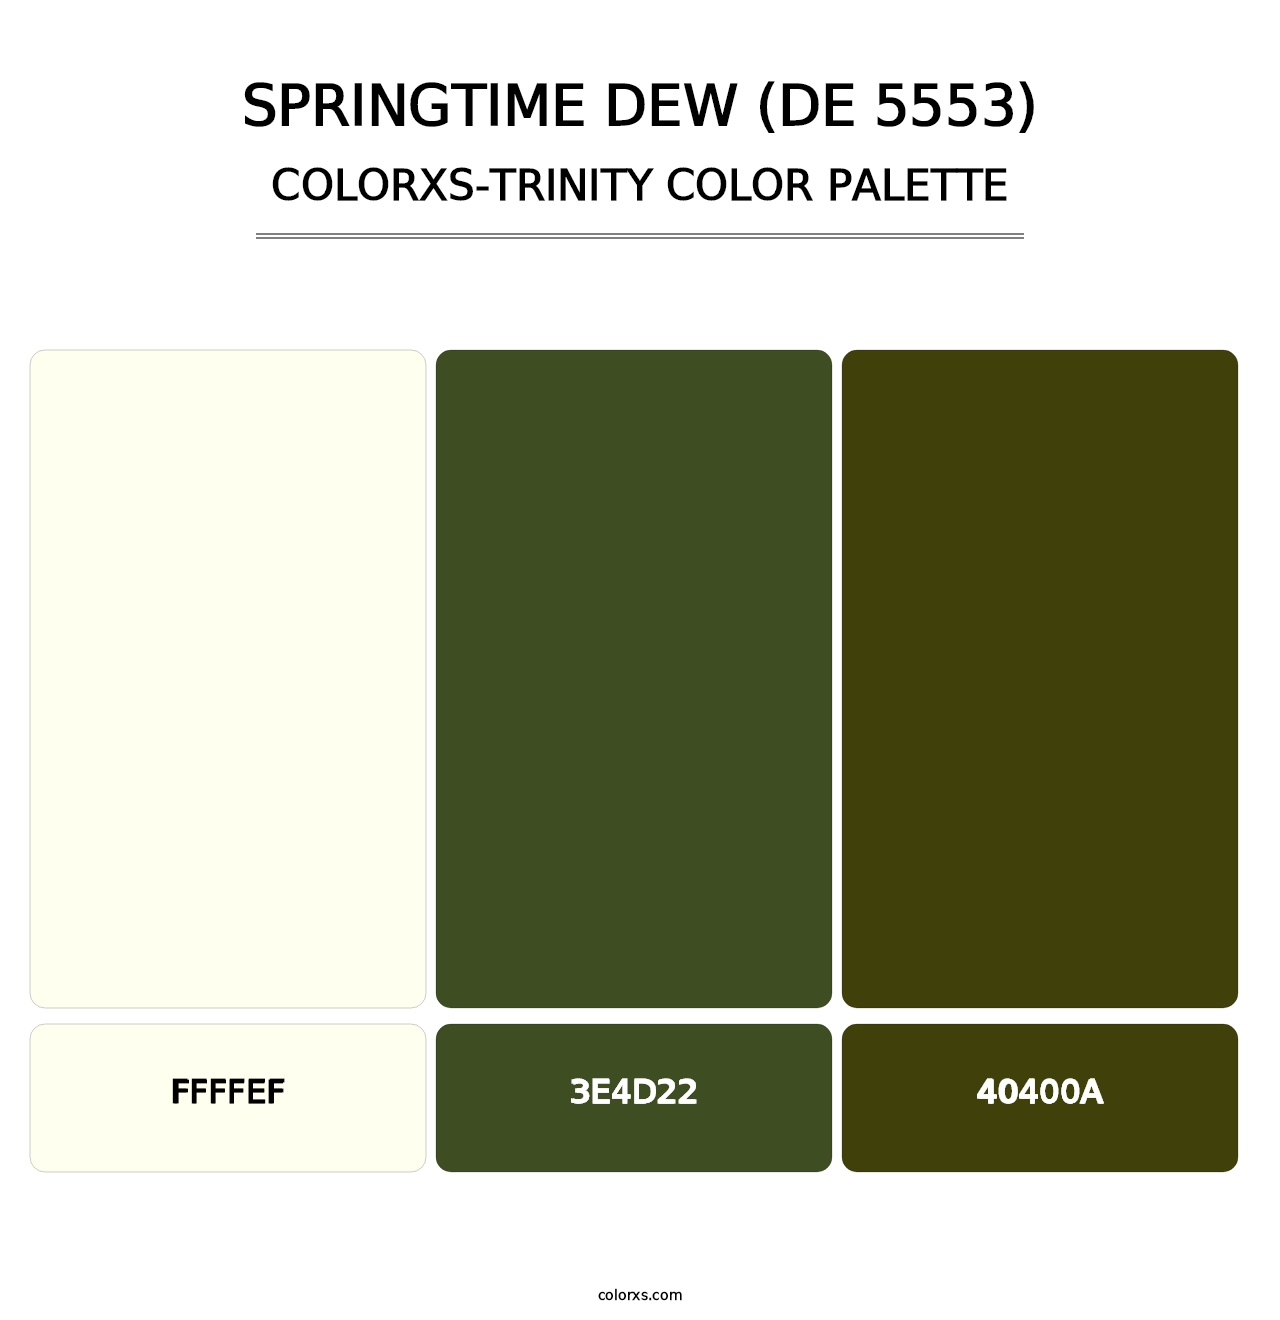 Springtime Dew (DE 5553) - Colorxs Trinity Palette